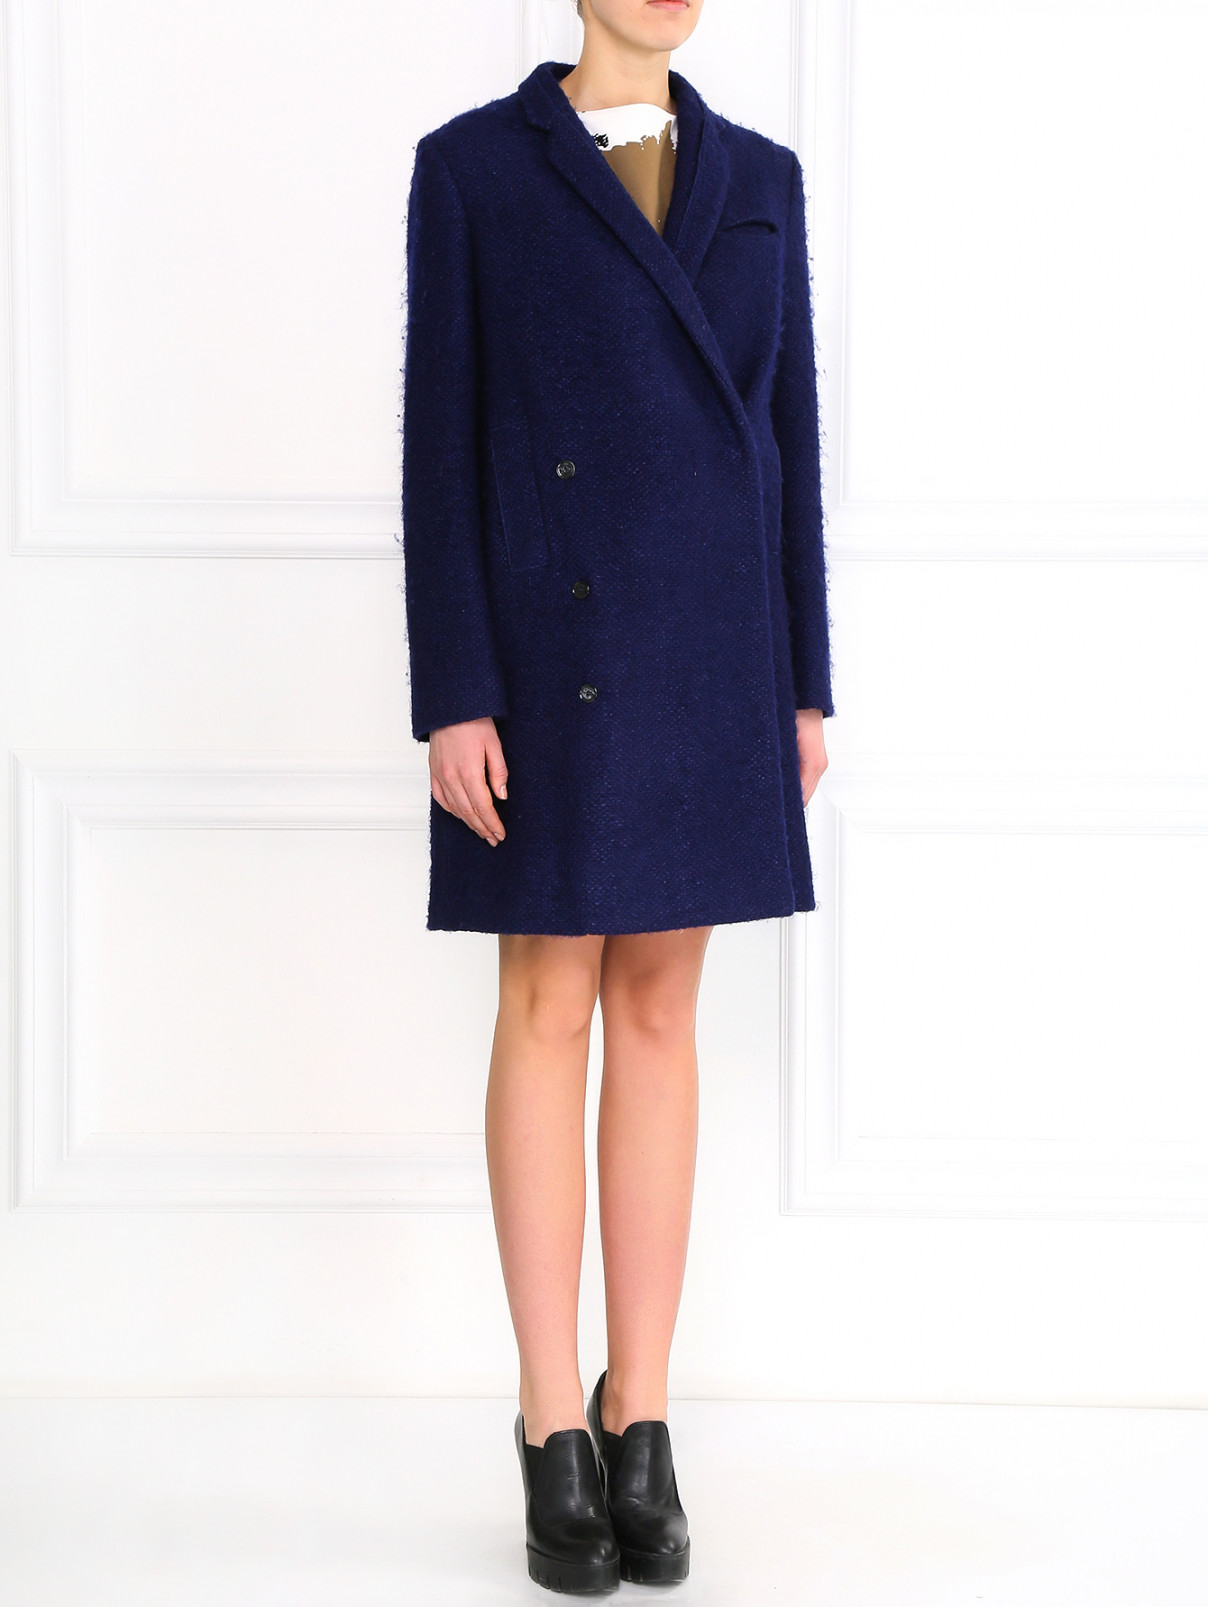 Объемное пальто из смешанной шерсти Costume National  –  Модель Общий вид  – Цвет:  Синий